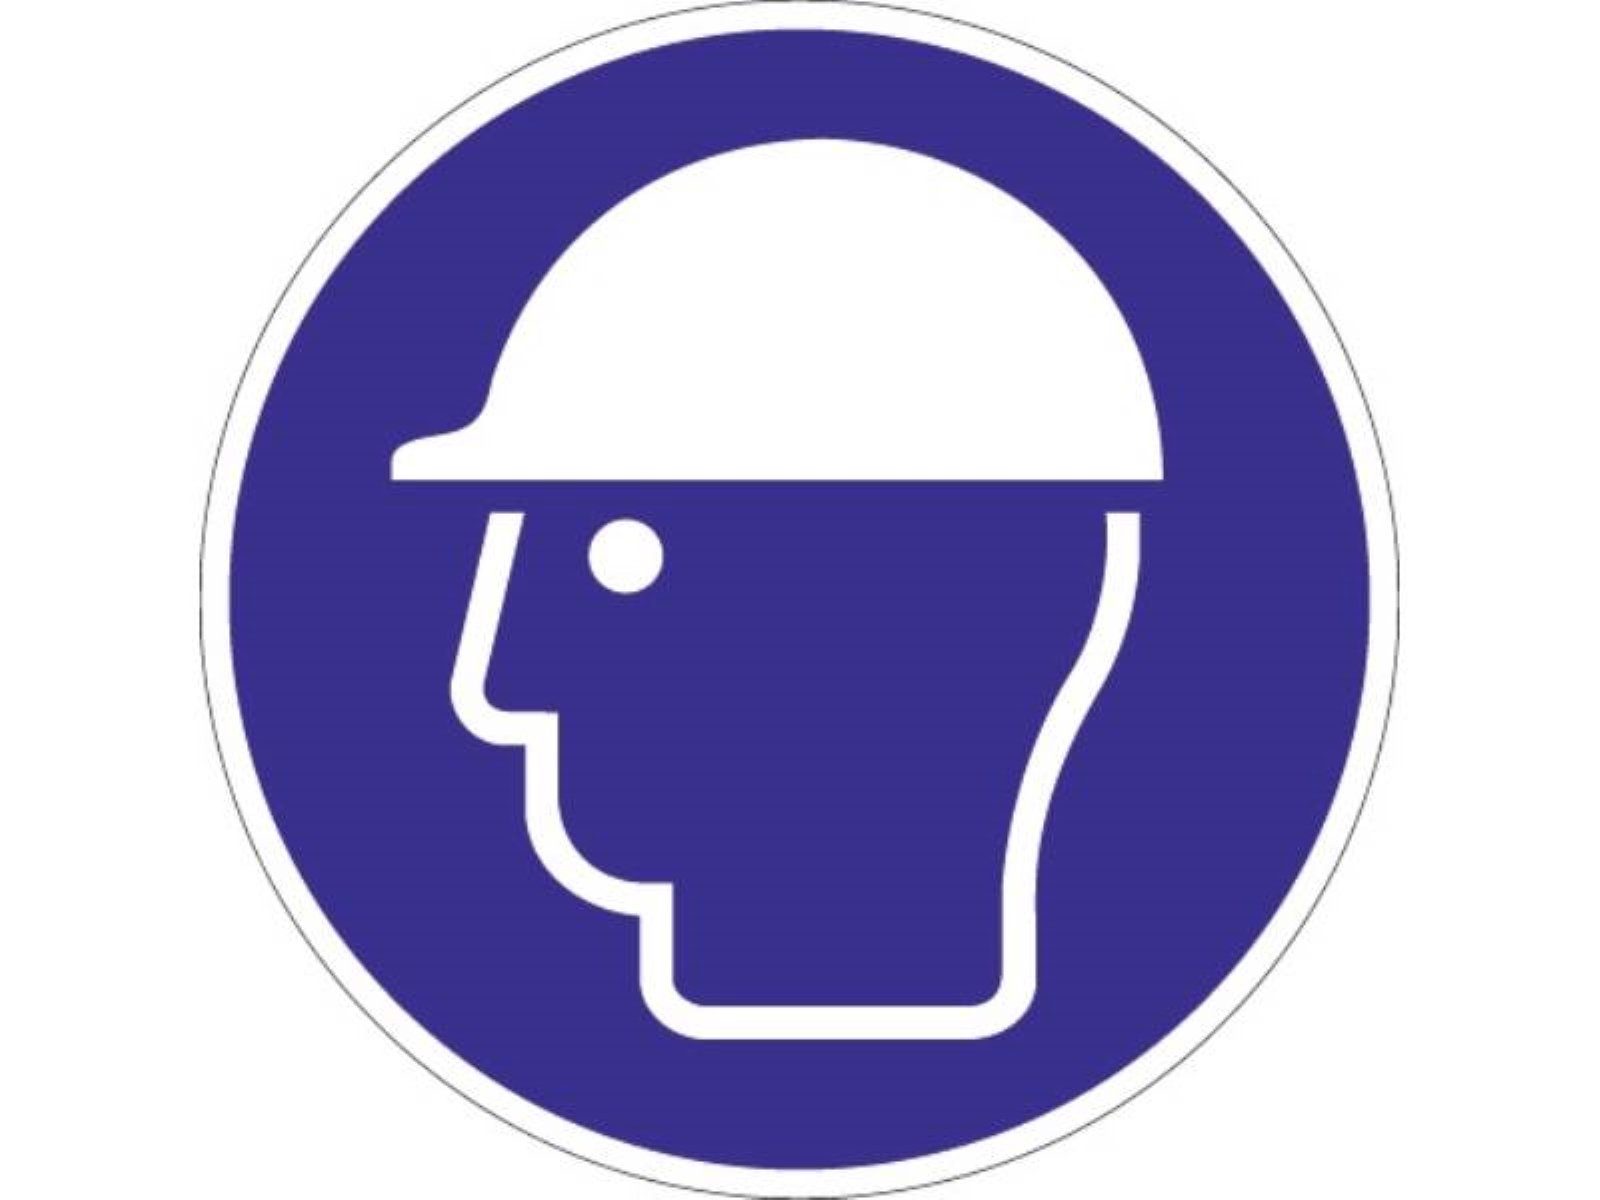 PROMAT Kopfschutz Schild Kopfschutz benutzen D.200mm Kunststoff blau/weiß ASR A1.3 DIN